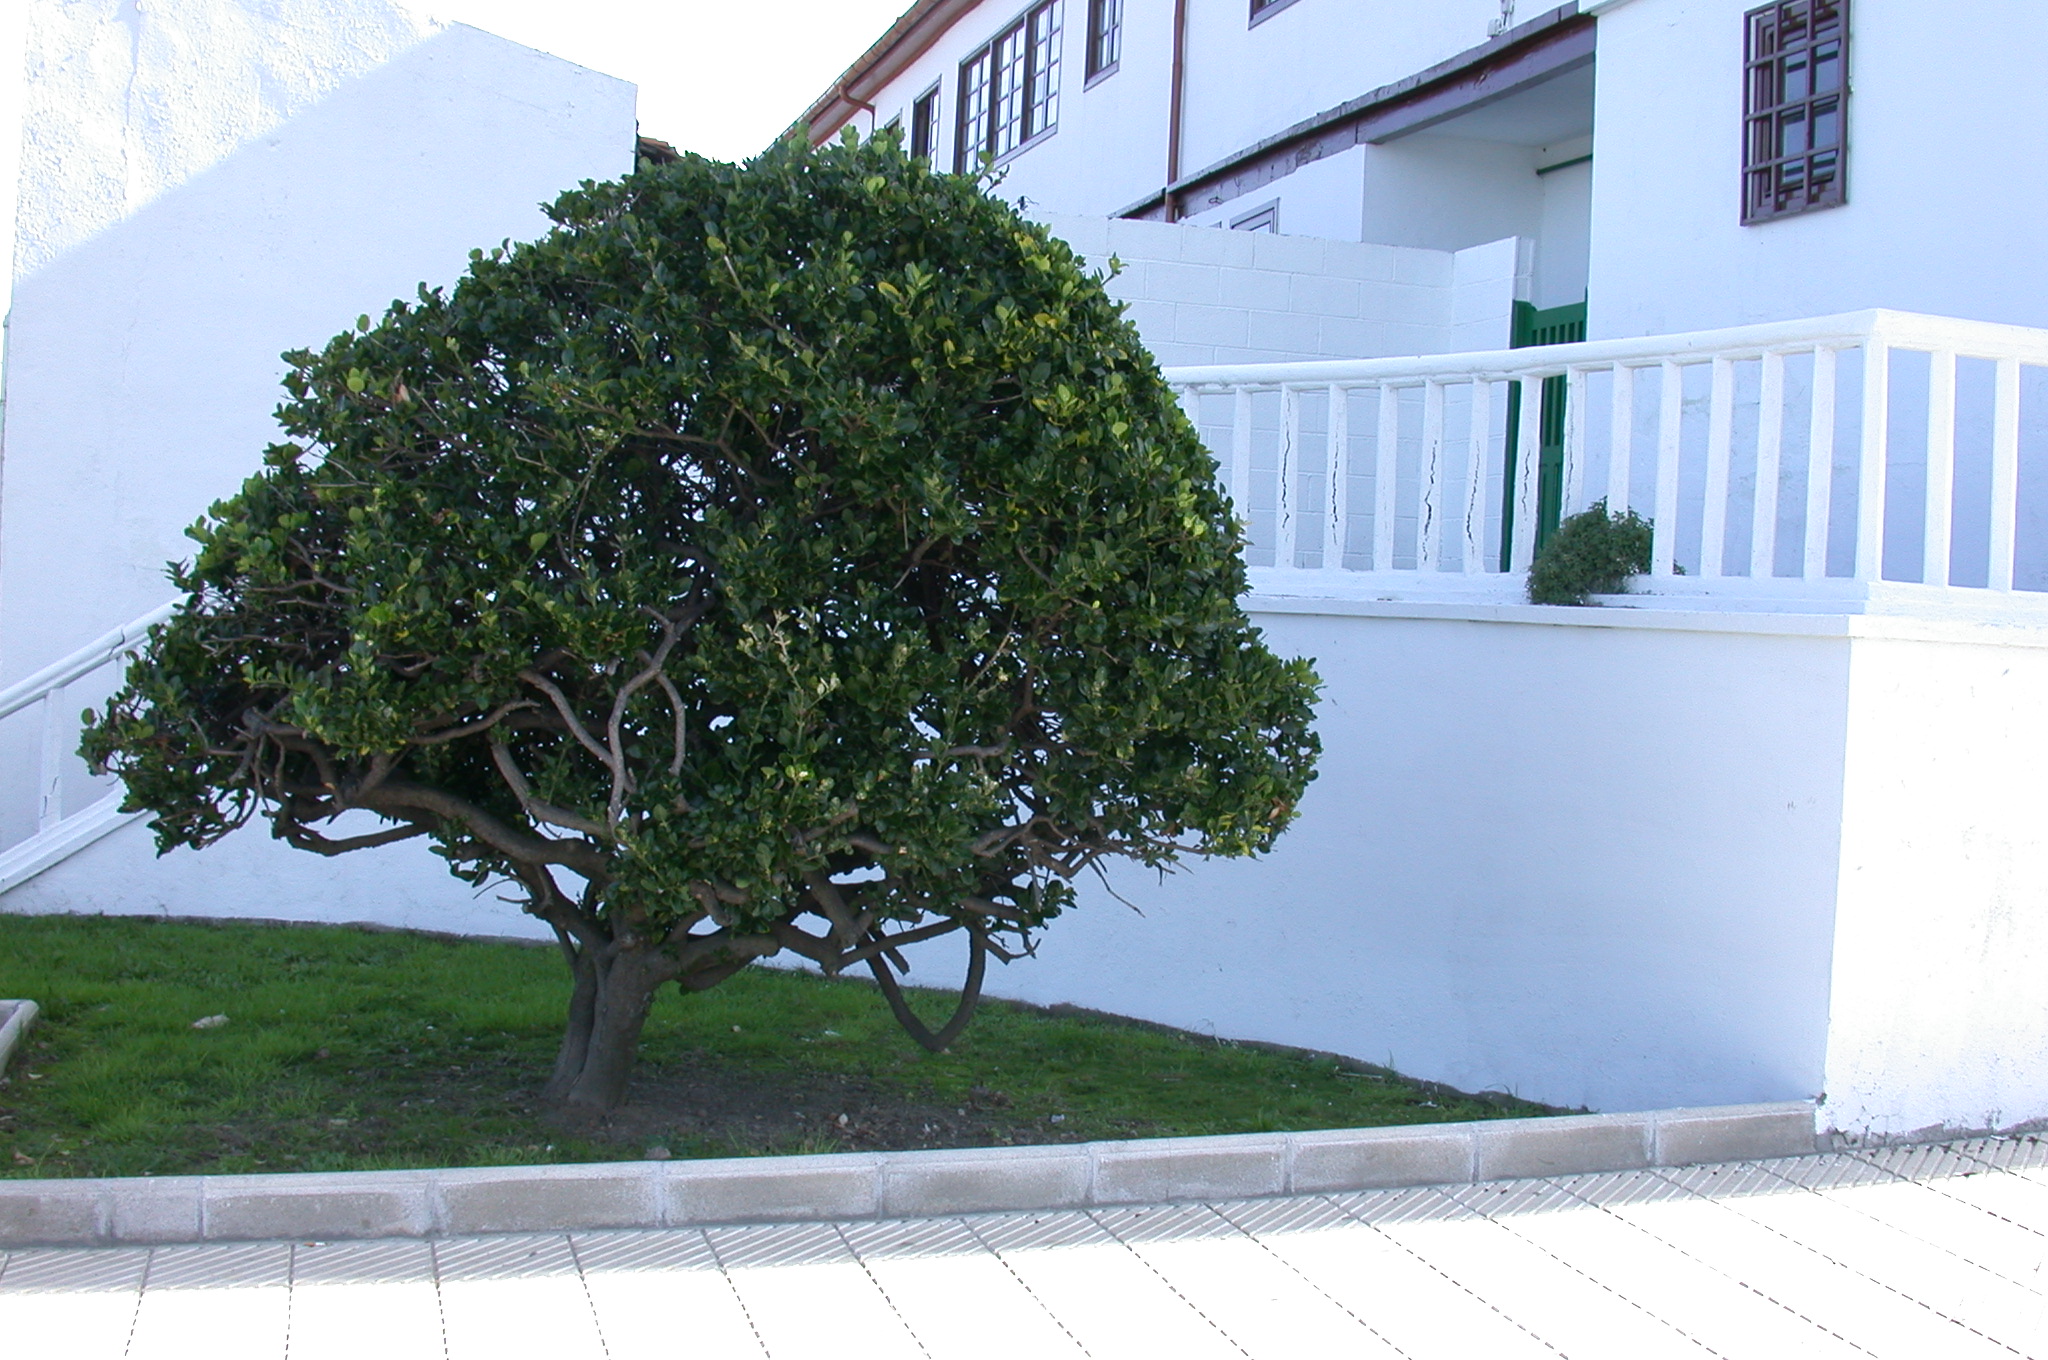 La imagen muestra un arbusto con forma redonda, con hojas verde oscuro pequeñas y un tronco corto